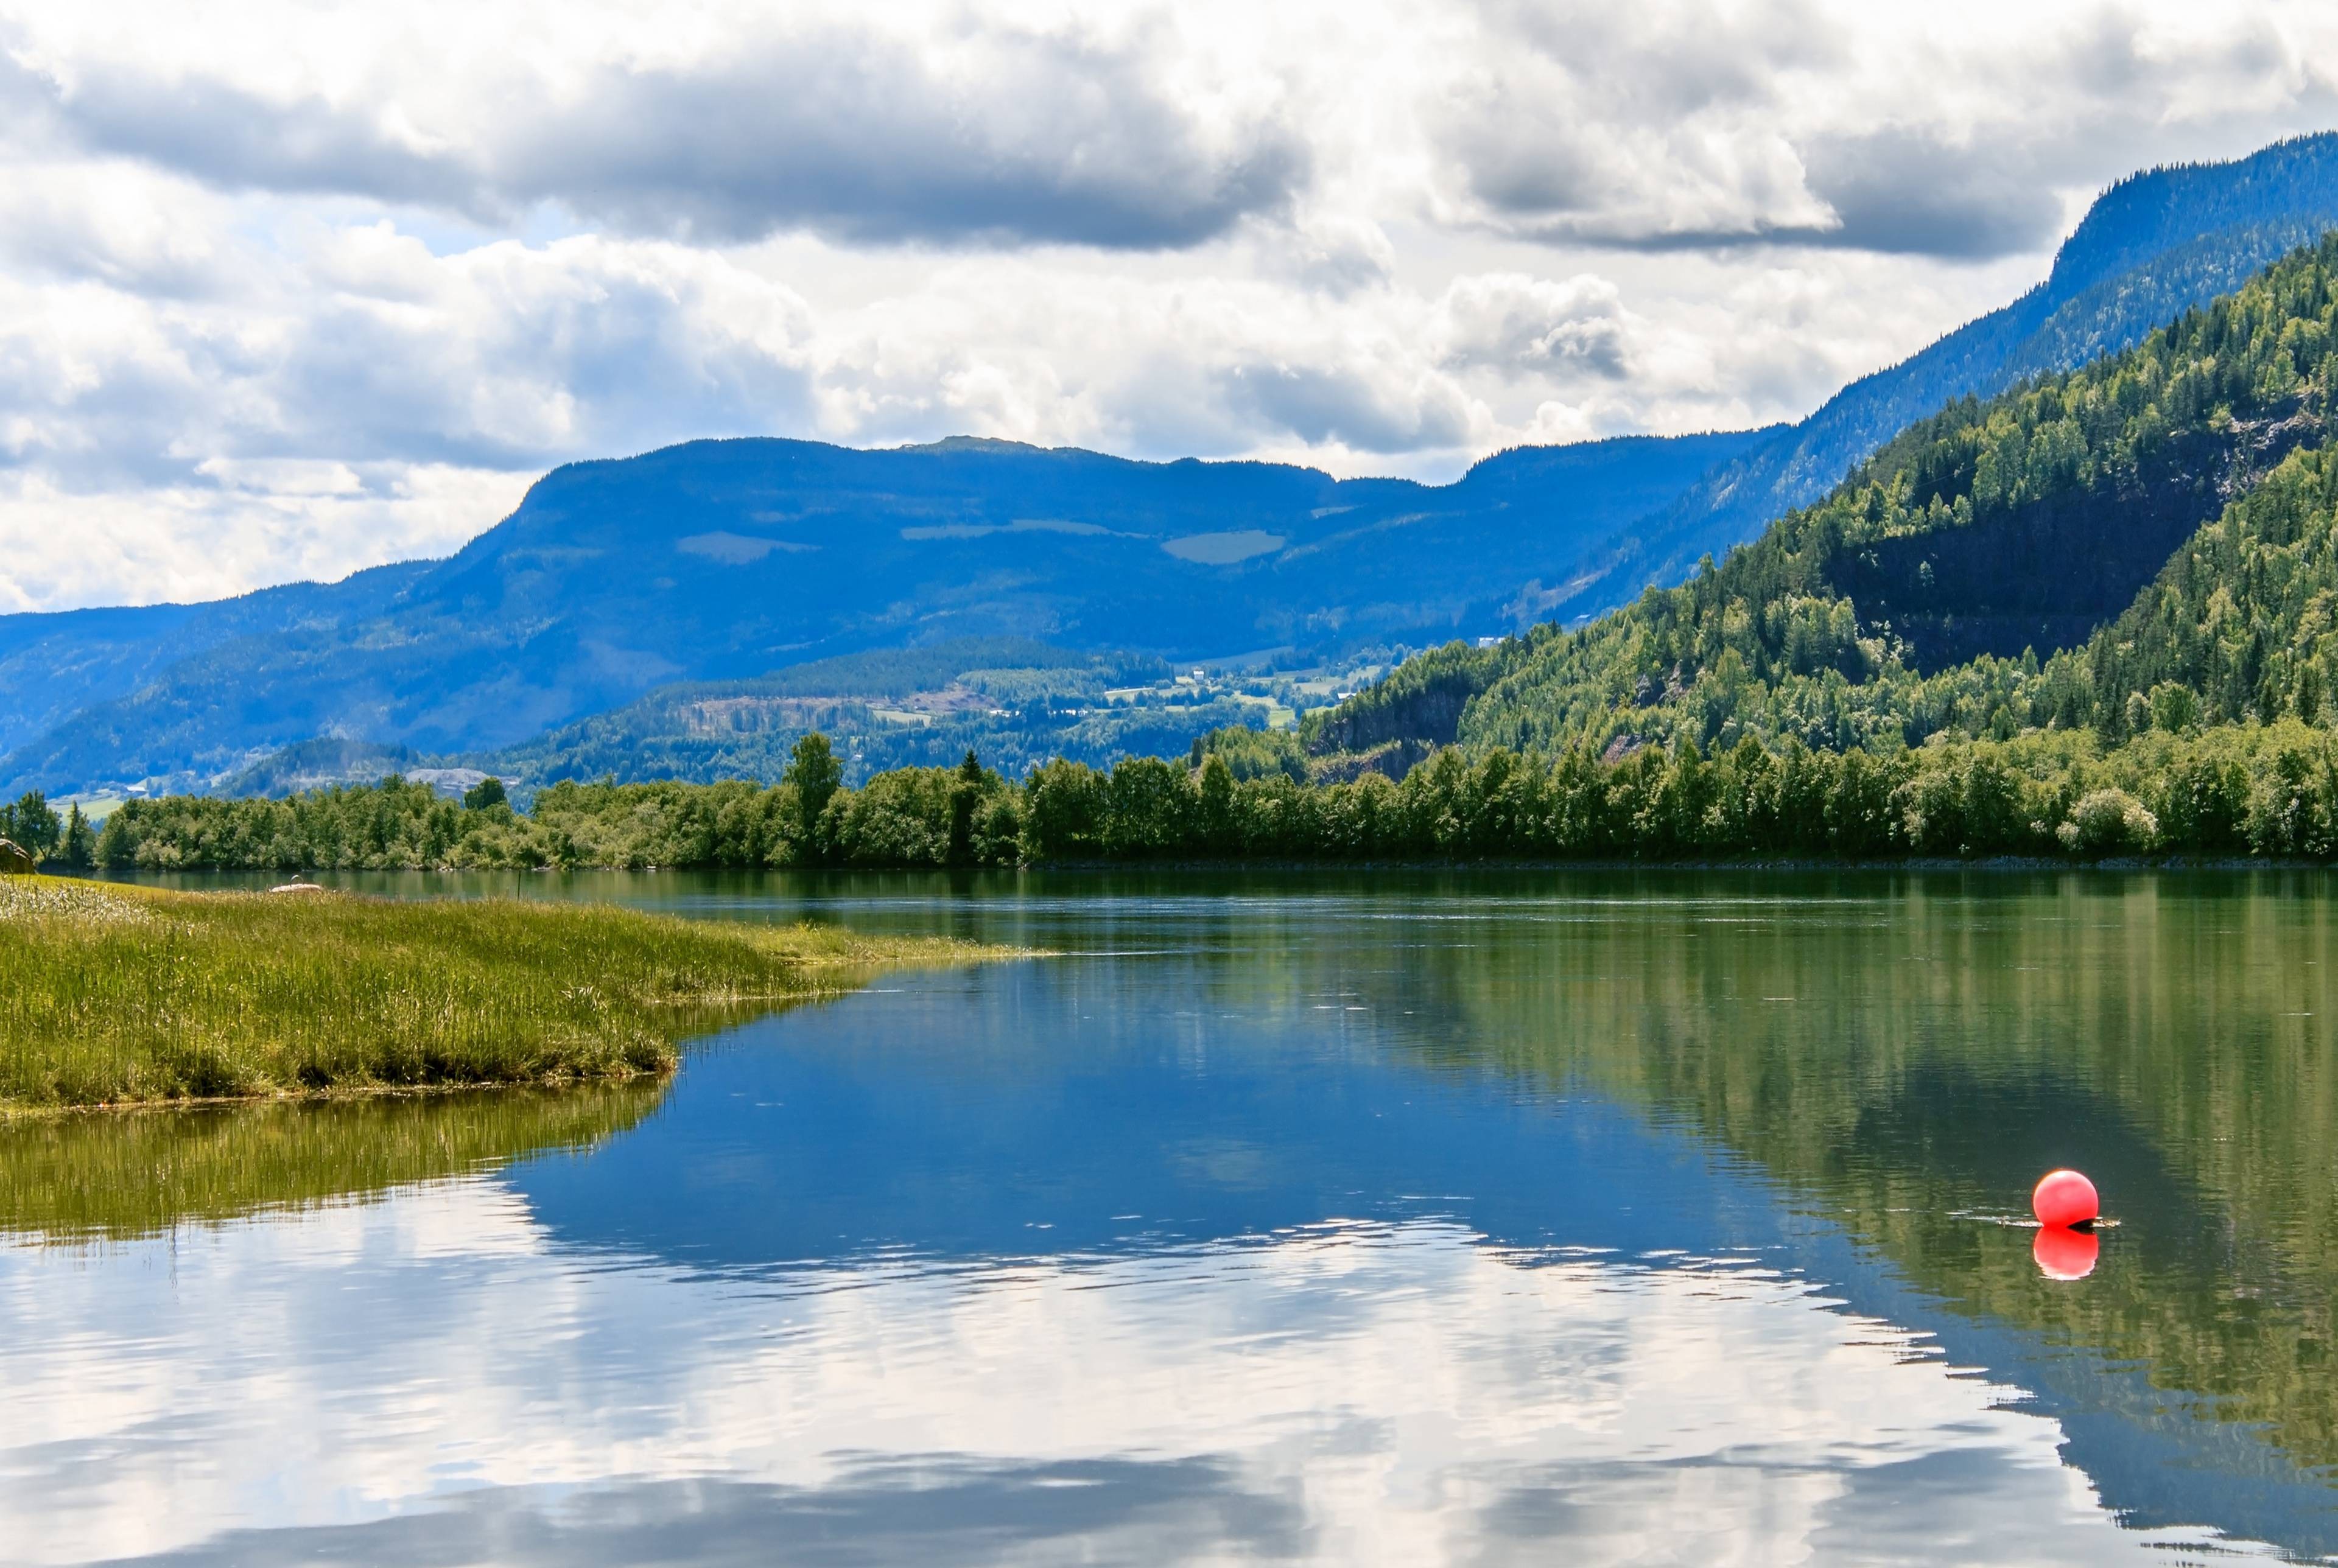 ⚡ Un viaje por carretera desde Oslo explorando la cultura, la historia y la belleza natural noruegas